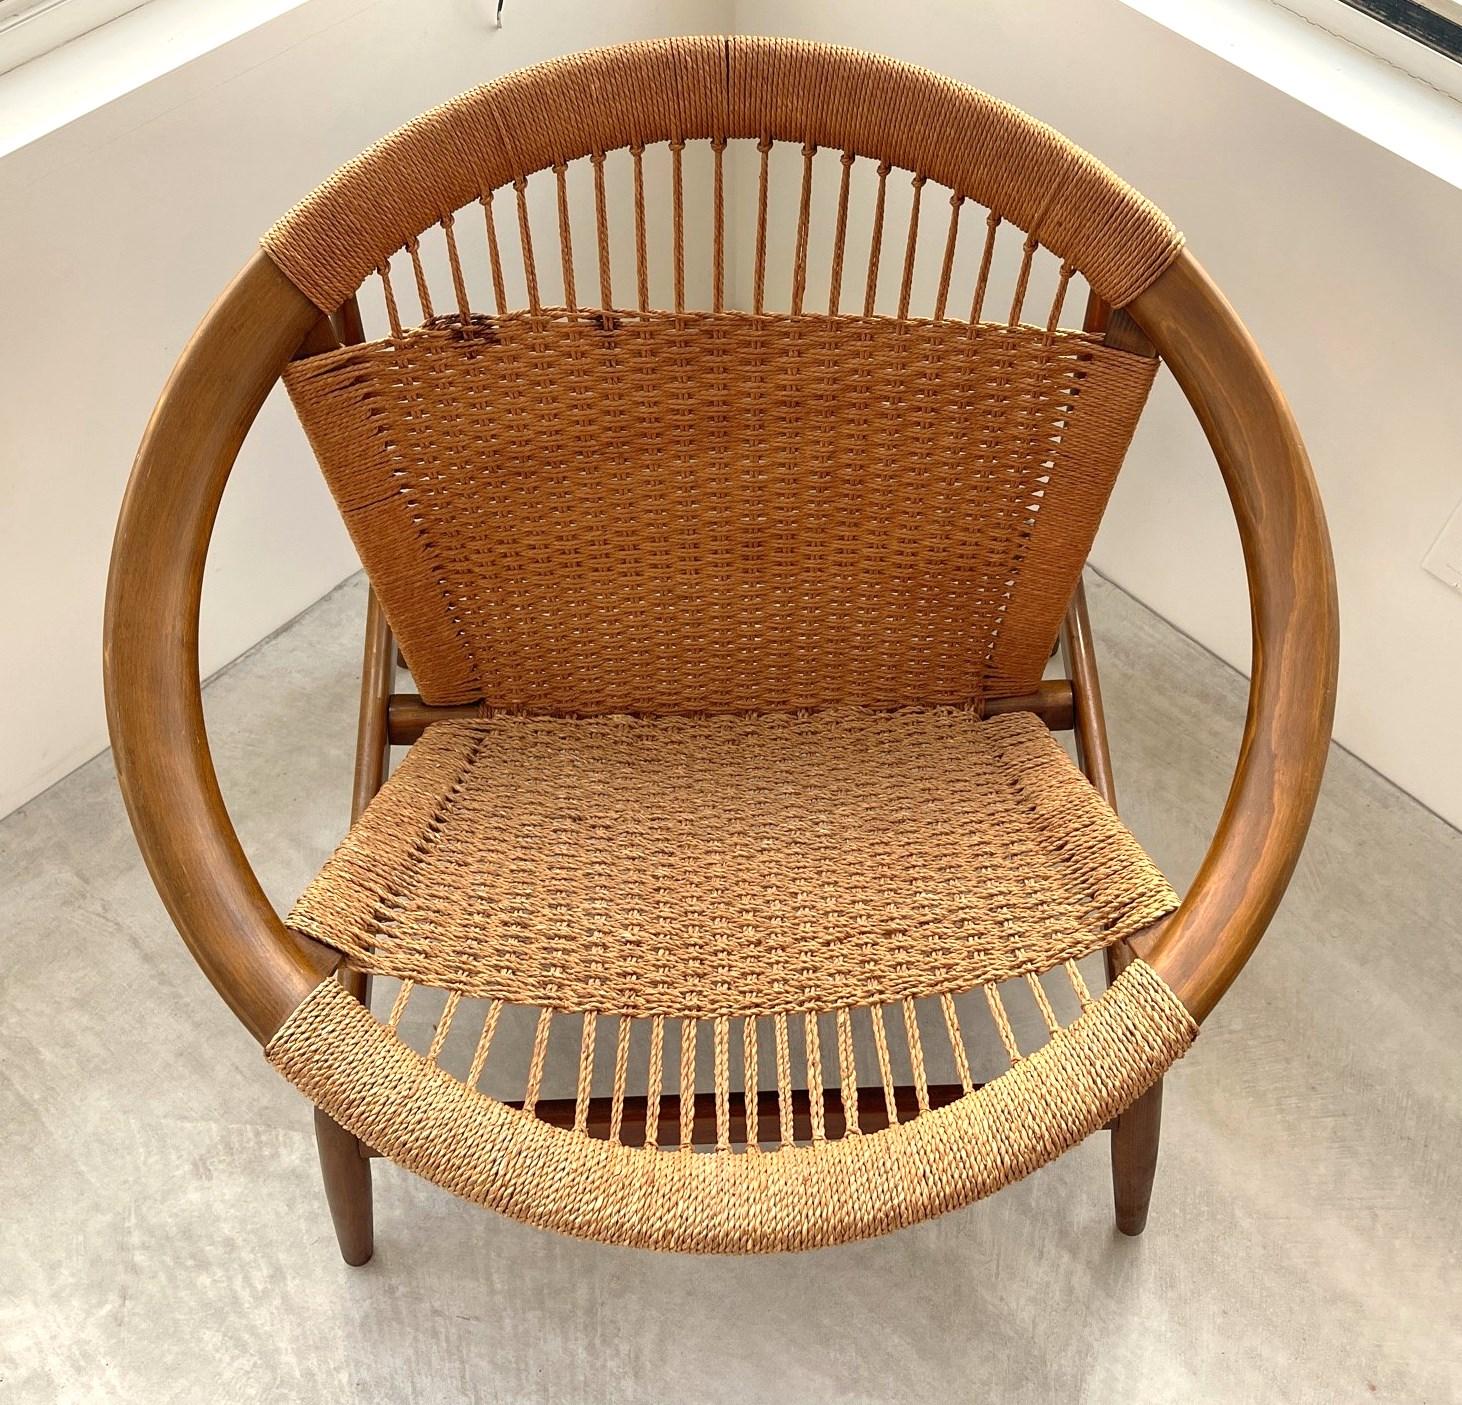 Chaise longue Ringstol de Illum Wikkelsø, assise en tissu cordé. Tout est d'origine et n'a pas été touché. Quelques petites marques sur le cordon. Superbe fauteuil d'appoint pour votre décoration intérieure. 
Dimensions Hauteur : 68,58 cm (27 po)